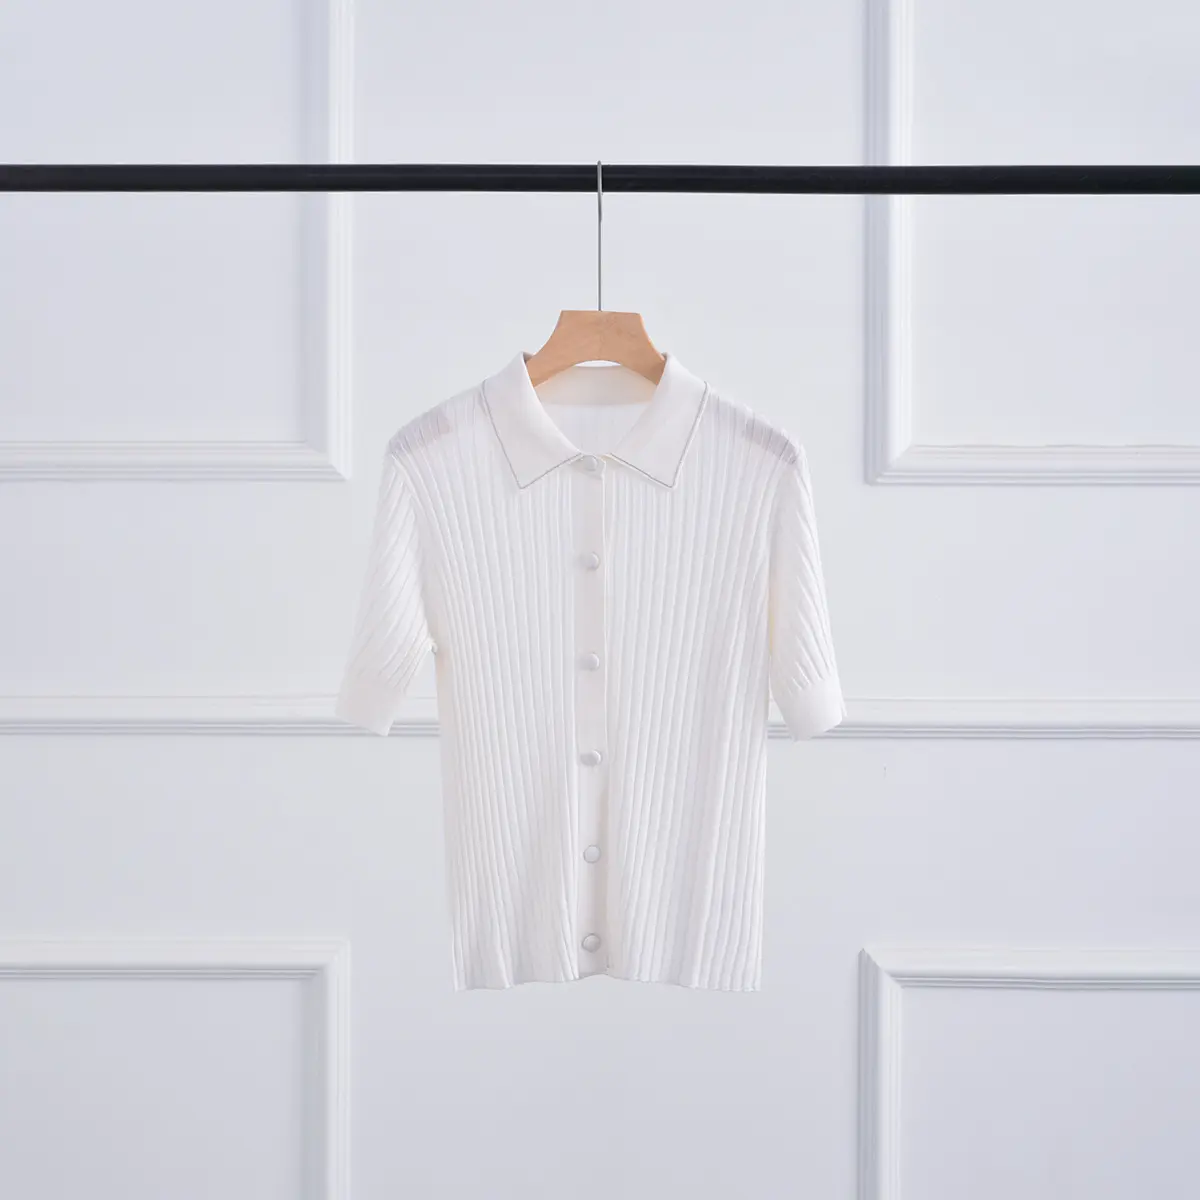 Заводская оптовая продажа, изготовленный на заказ, трикотажный свитер в рубчик, футболка из чистой шерсти, поло с коротким рукавом, трикотажная рубашка в полоску